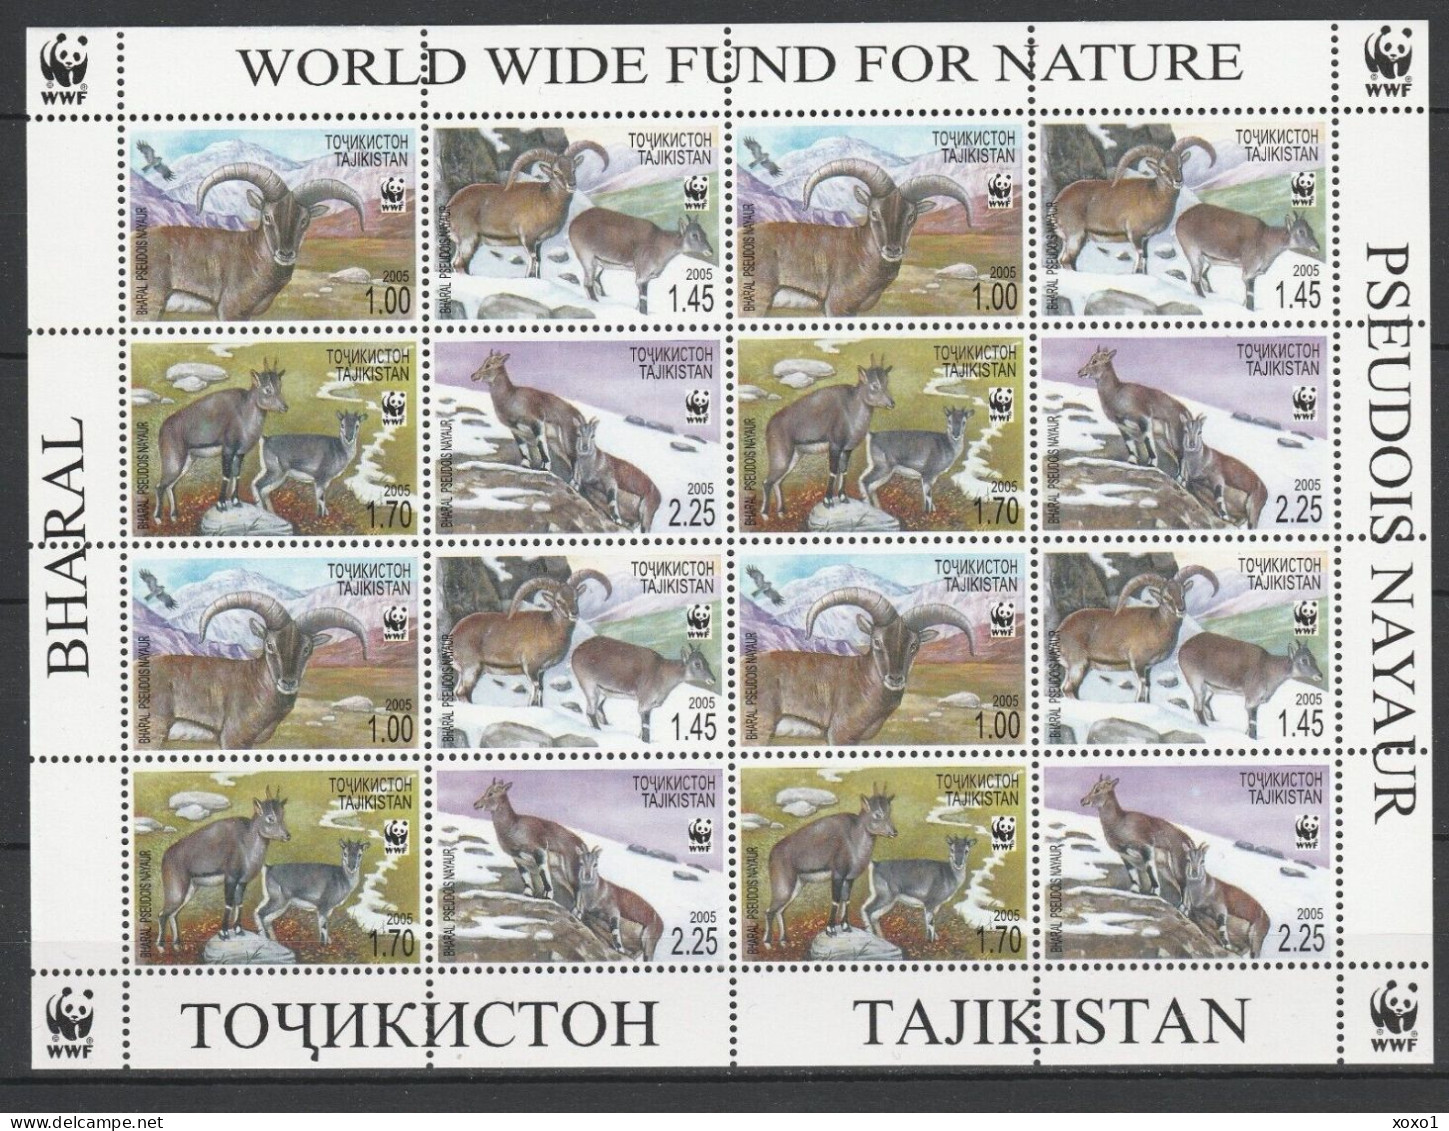 Tajikistan 2005 Mi.No. 392 - 395  Tadschikistan ANIMALS Mammals Bharal WWF  M\sh  MNH** 30.00 € - Tajikistan